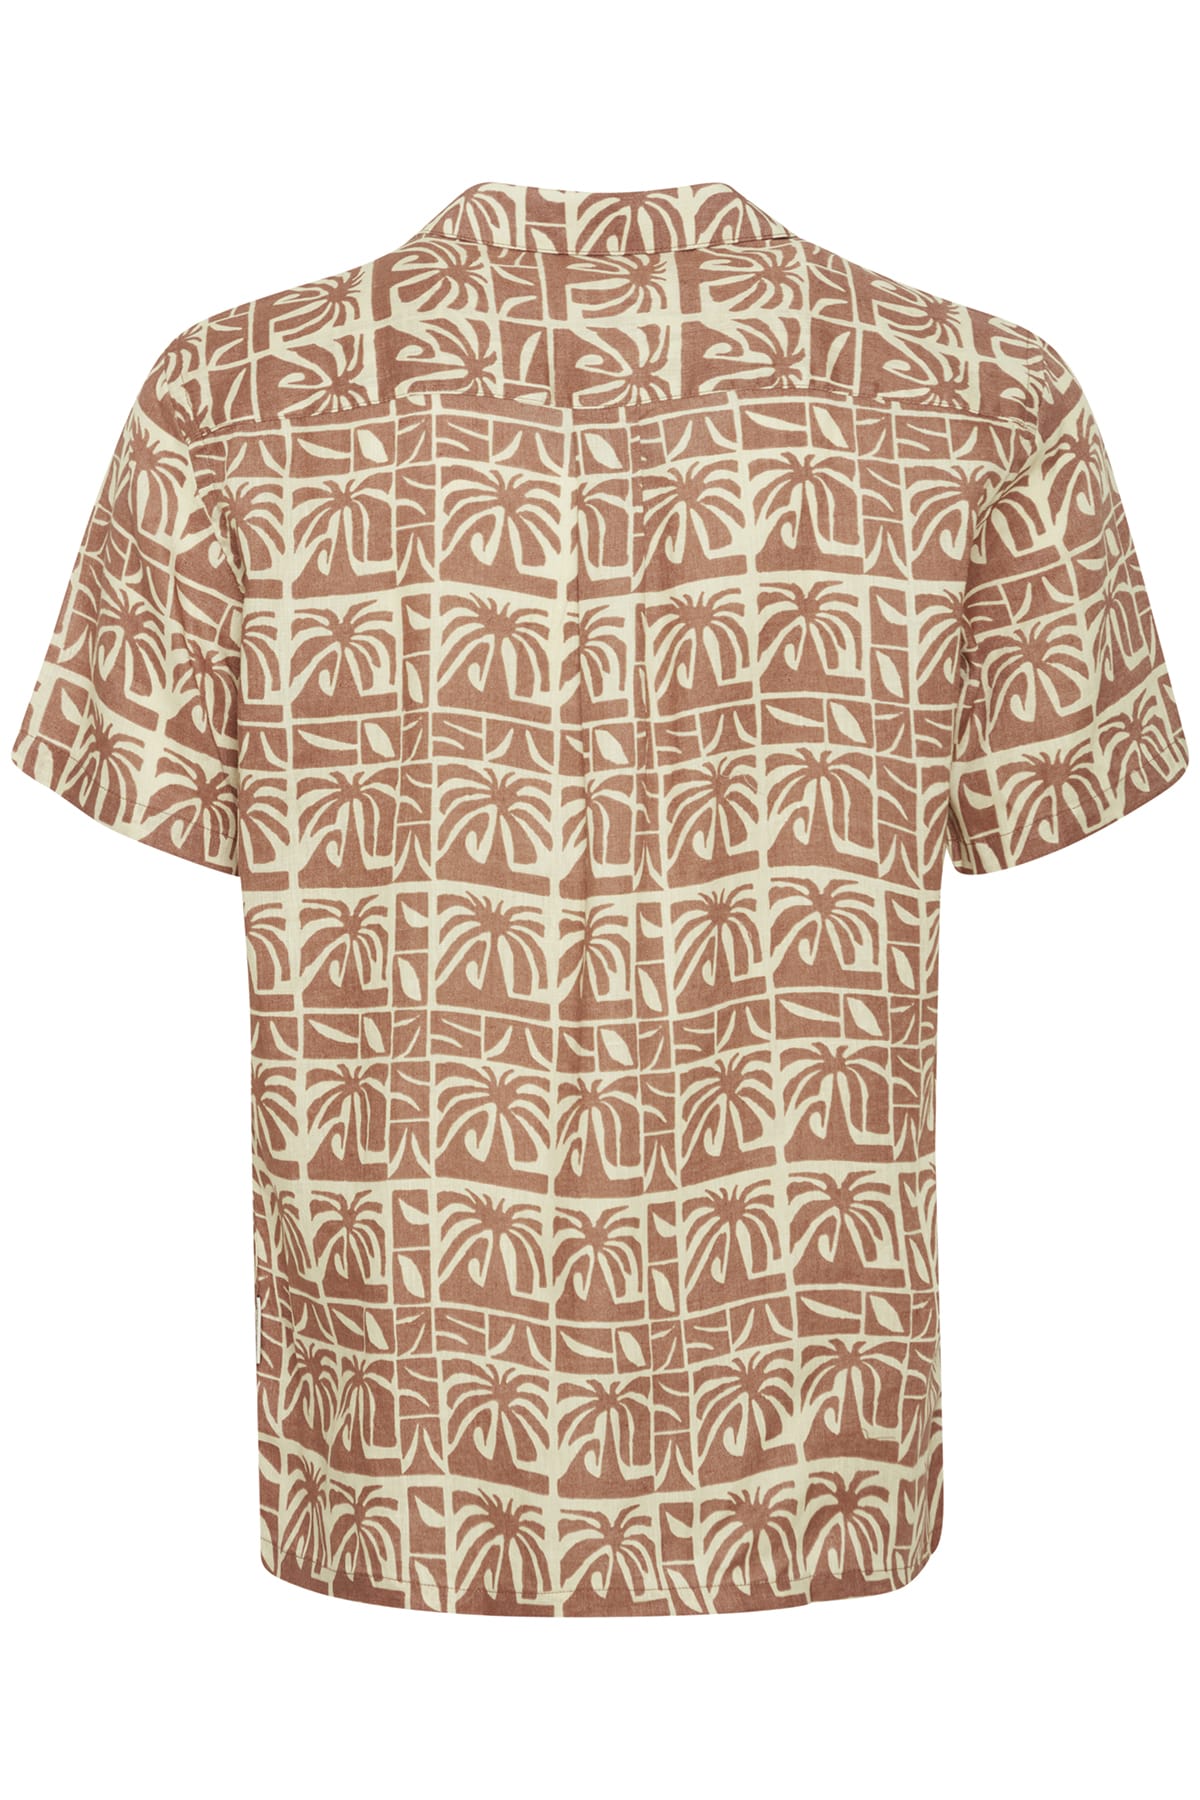 Hemd CFAnton SS AOP palm shirt - 100% linen Beaver Fur Hemd Casual Friday 